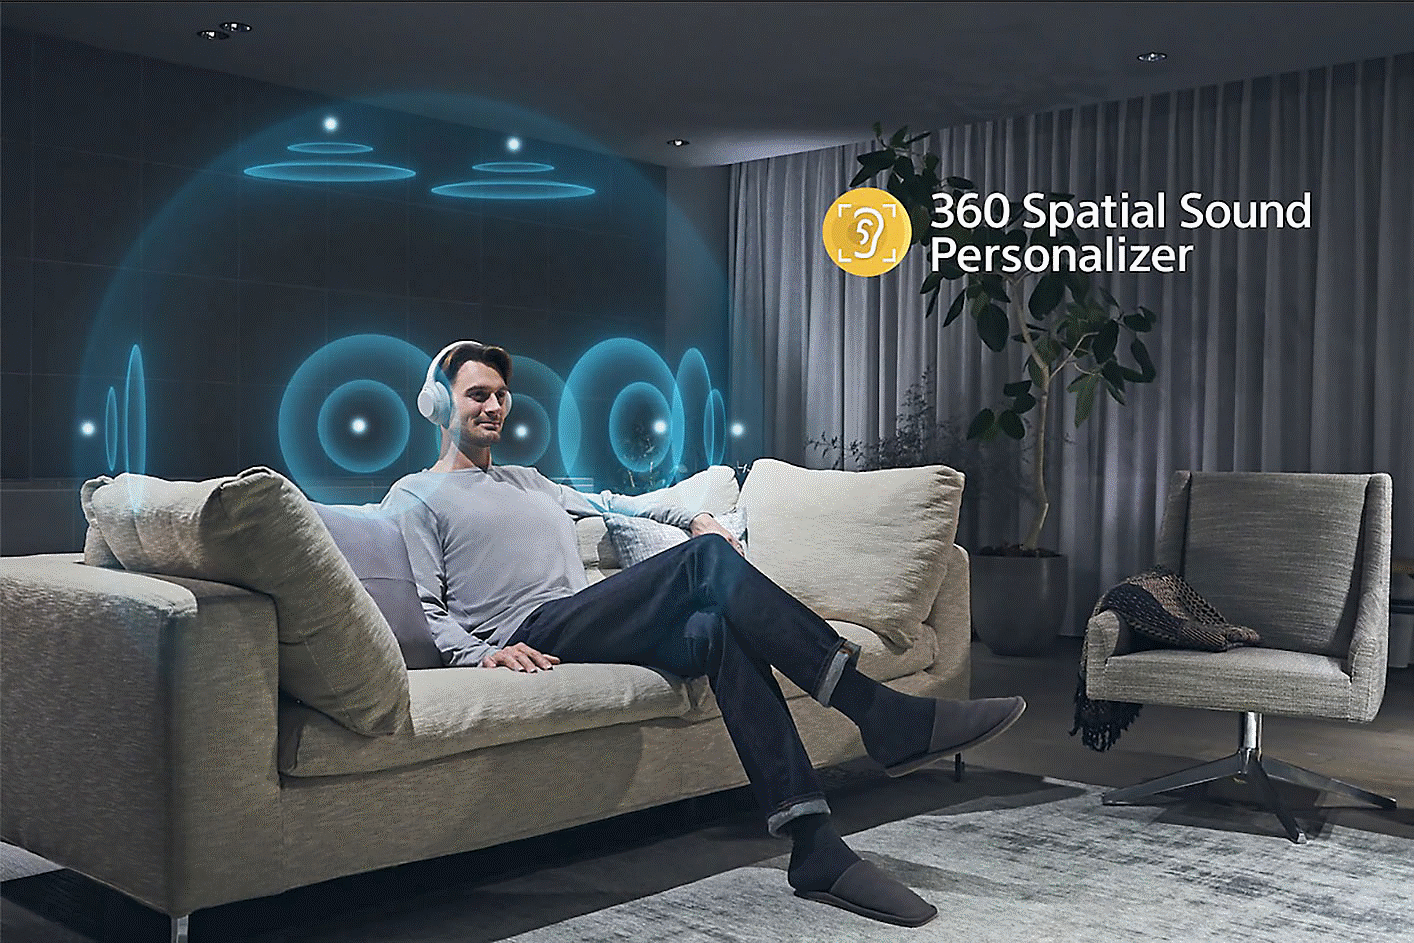 Slika osebe s slušalkami na kavču, pri čemer jo obkrožajo koncentrični krogi in logotip tehnologije 360 Spatial Sound na desni